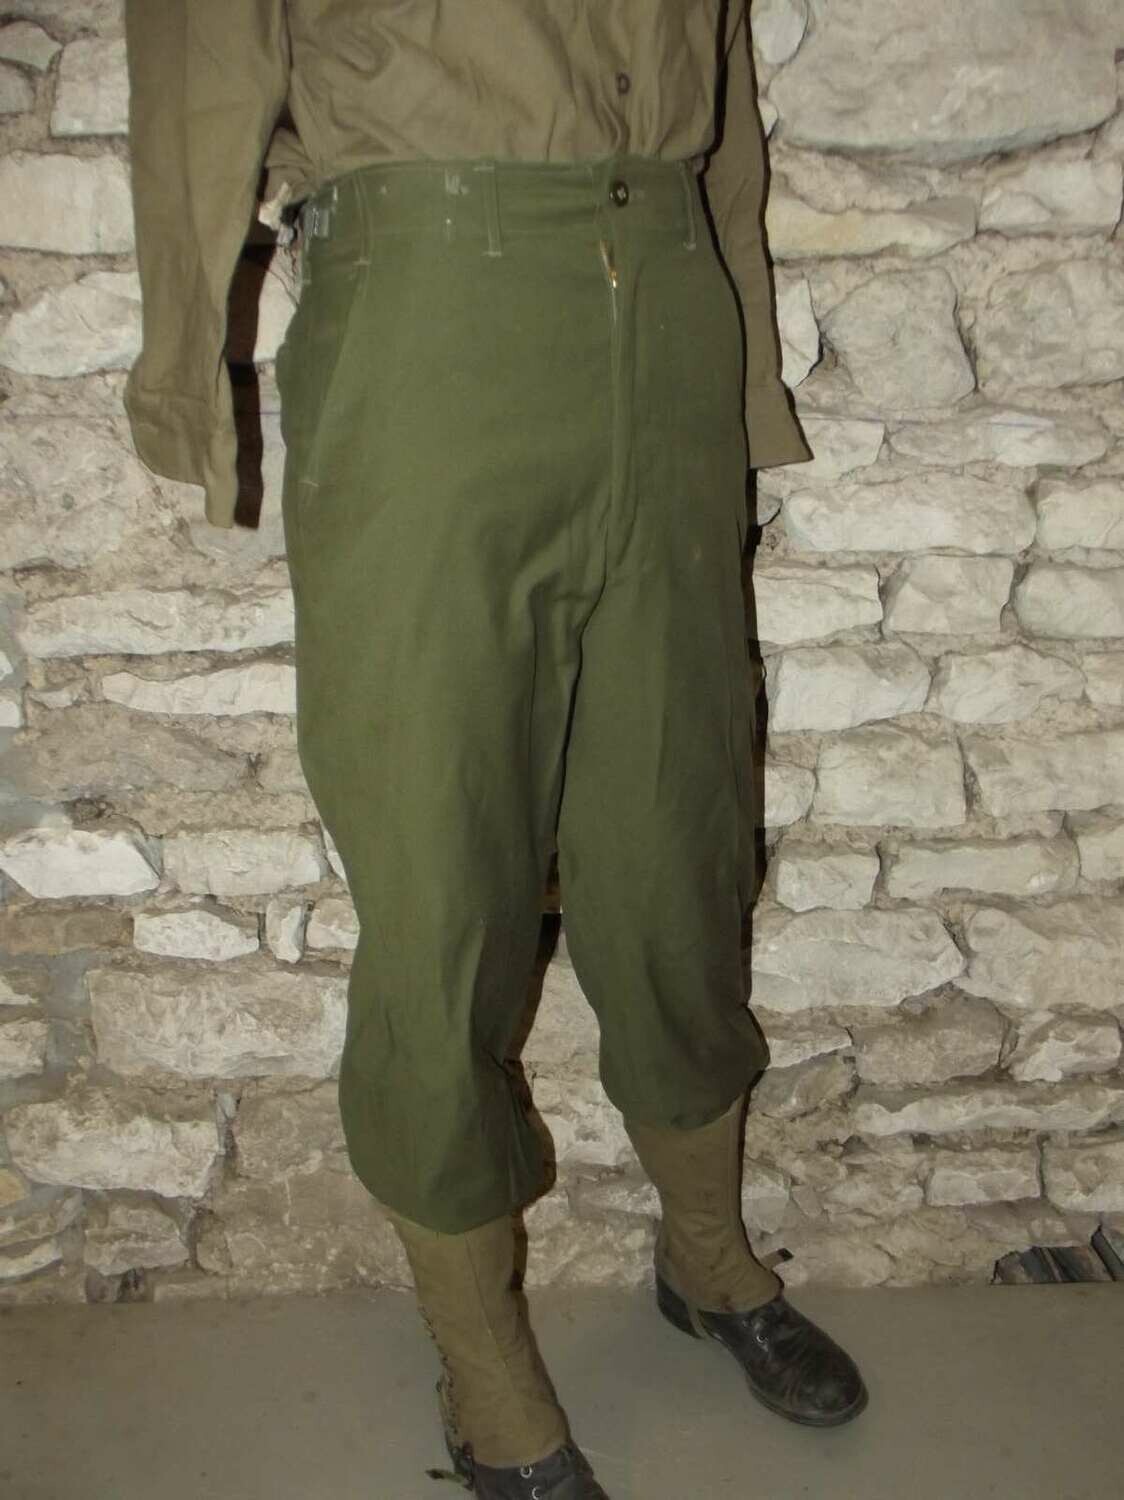 Pantalon laine US OG-108 Réenactors ww2 Guerre de Corée. Taille 40 Europe.